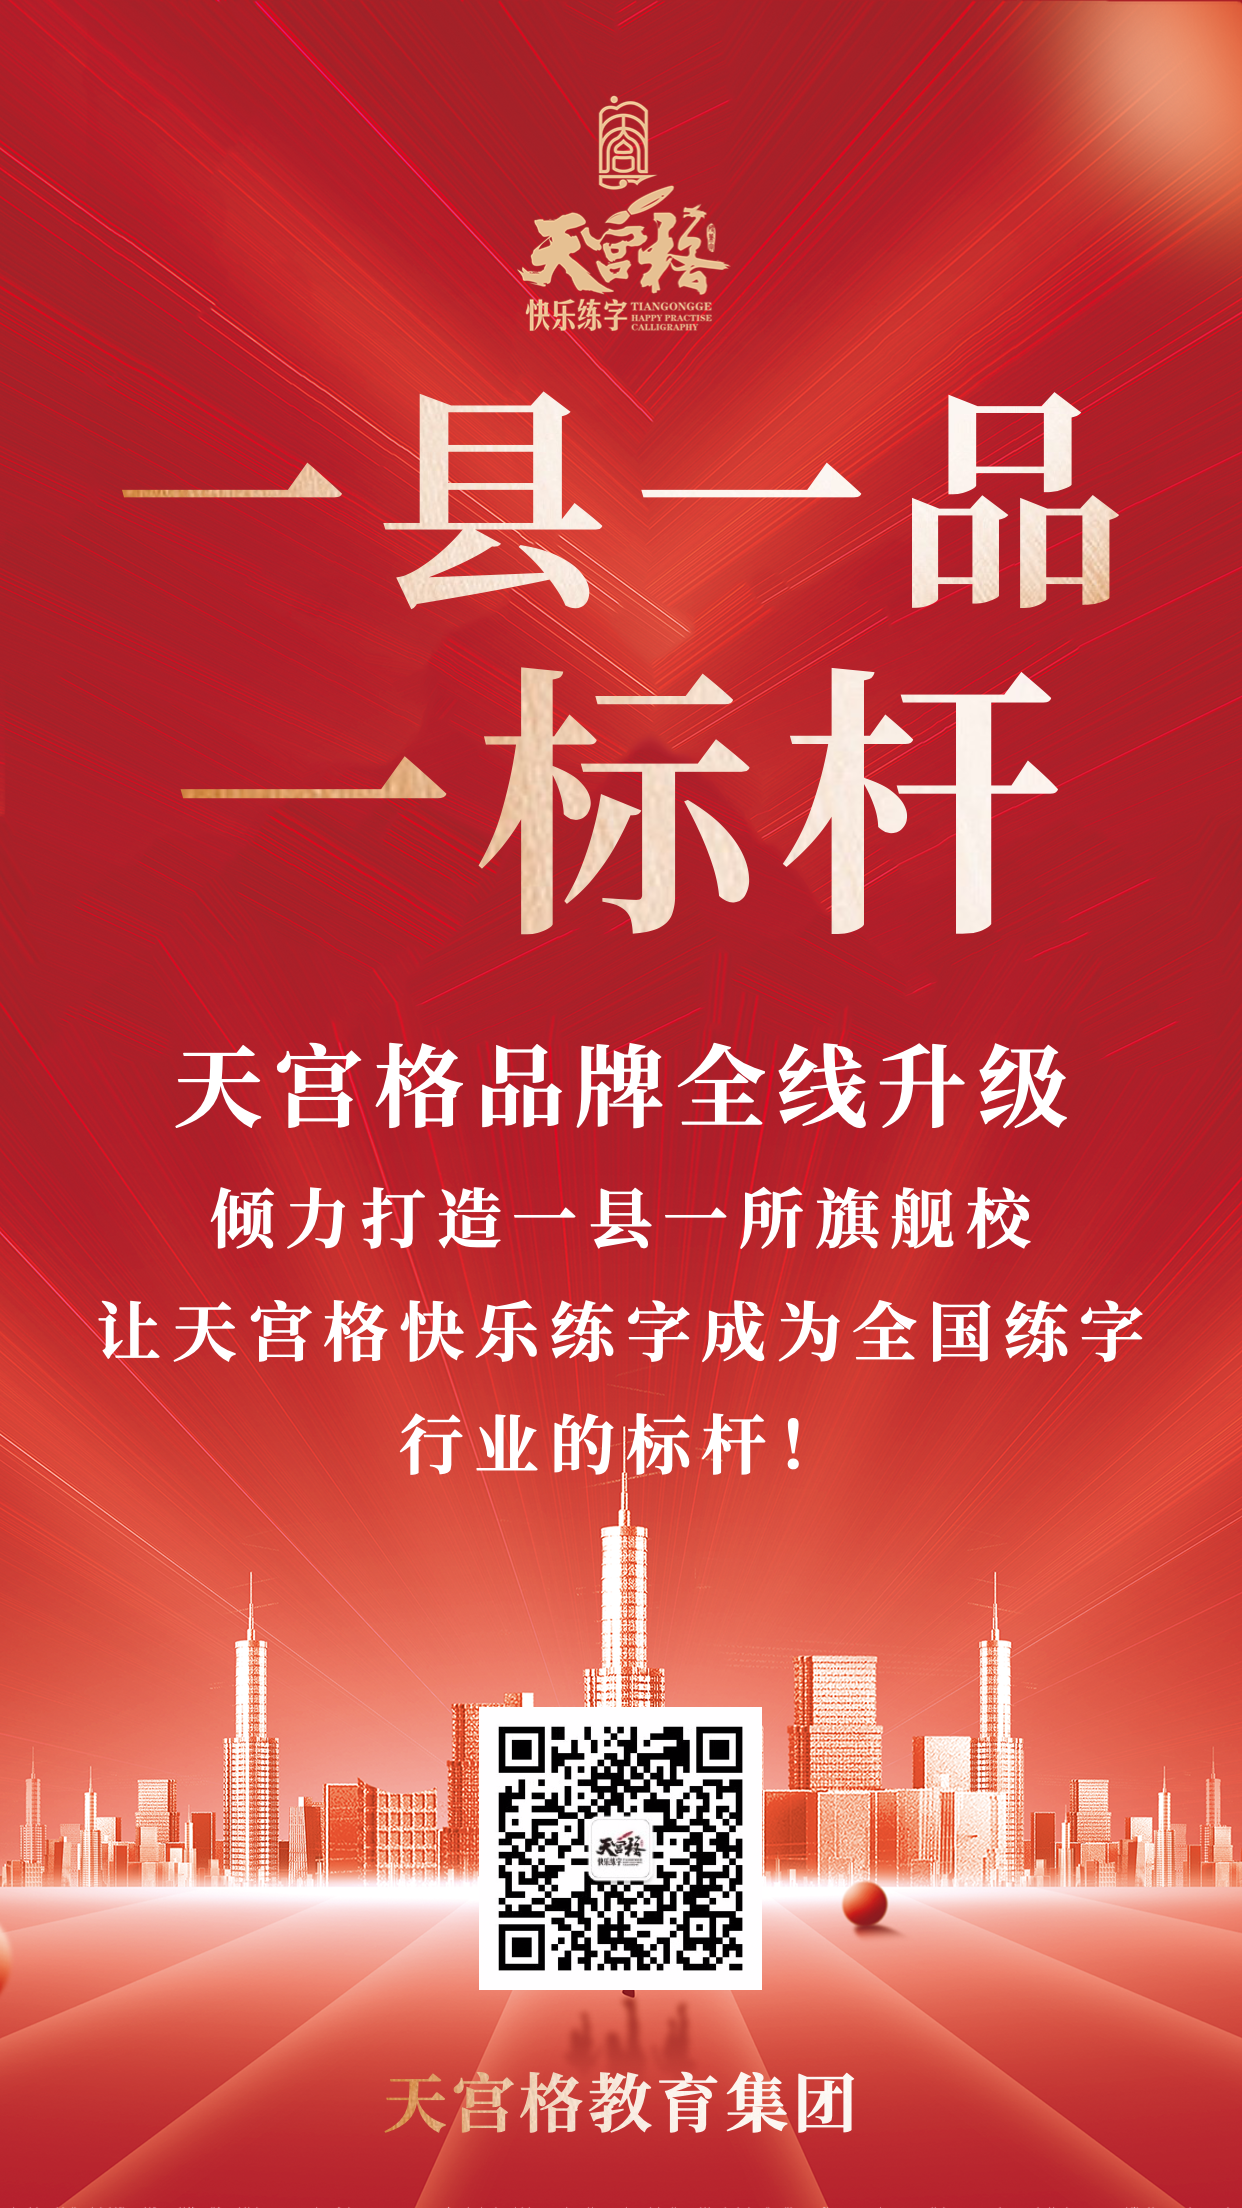 北京天宫格教育总部“一县一品一标杆”工程正式启动！